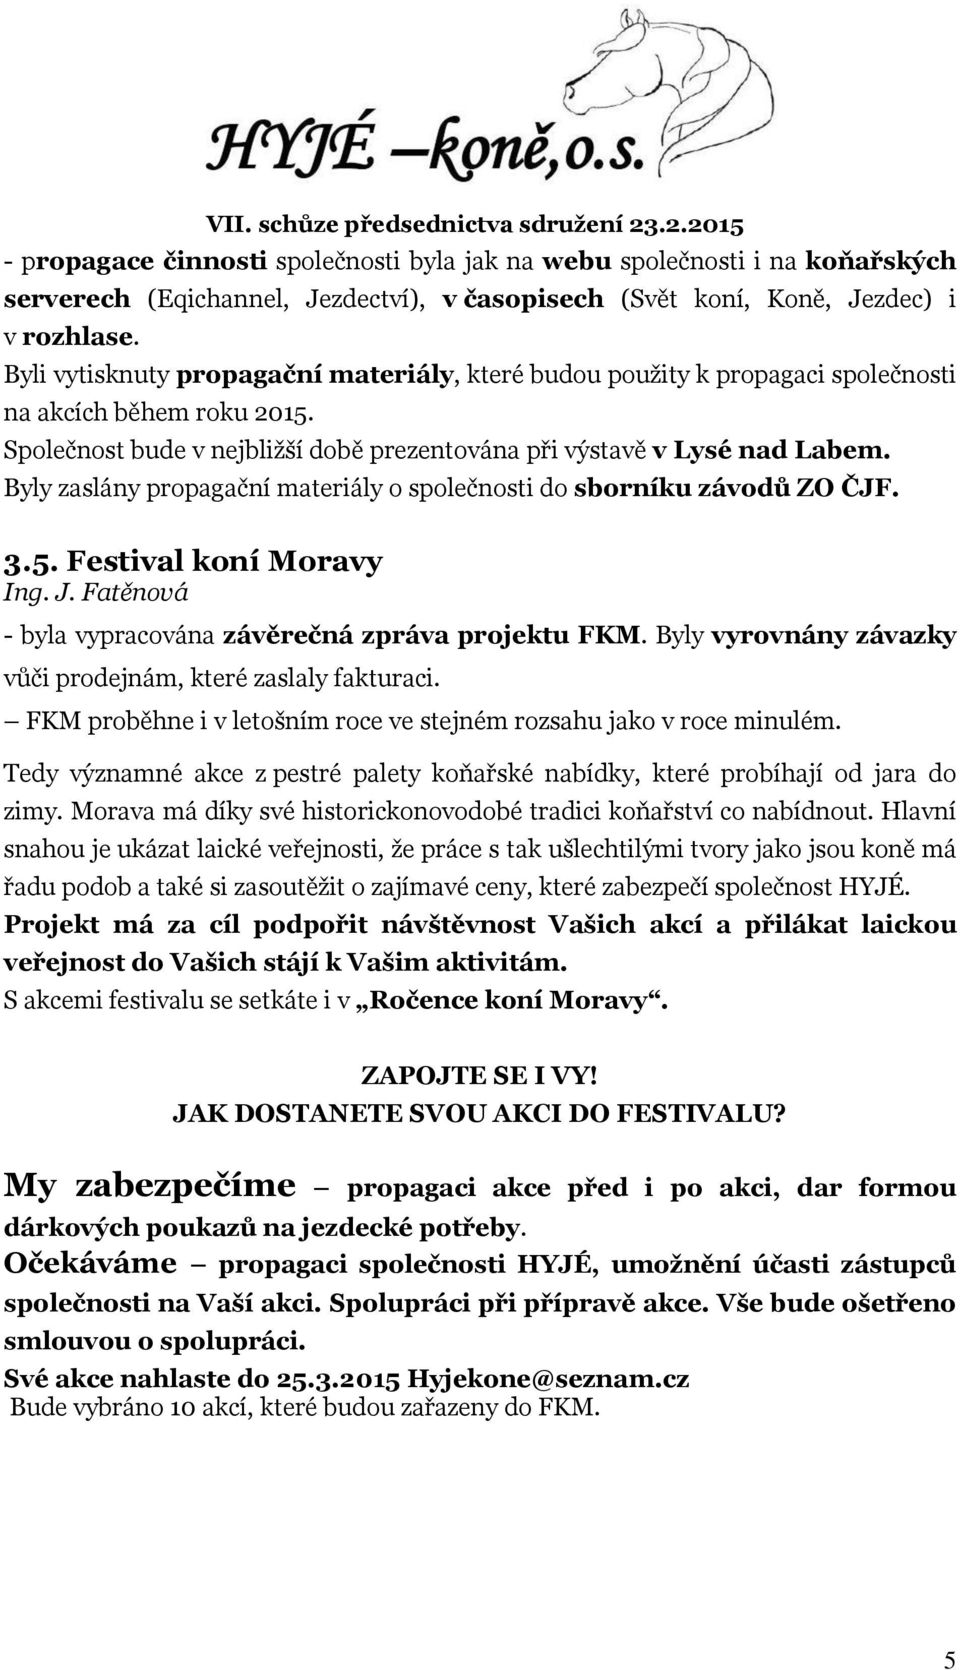 Byly zaslány propagační materiály o společnosti do sborníku závodů ZO ČJF. 3.5. Festival koní Moravy Ing. J. Fatěnová - byla vypracována závěrečná zpráva projektu FKM.